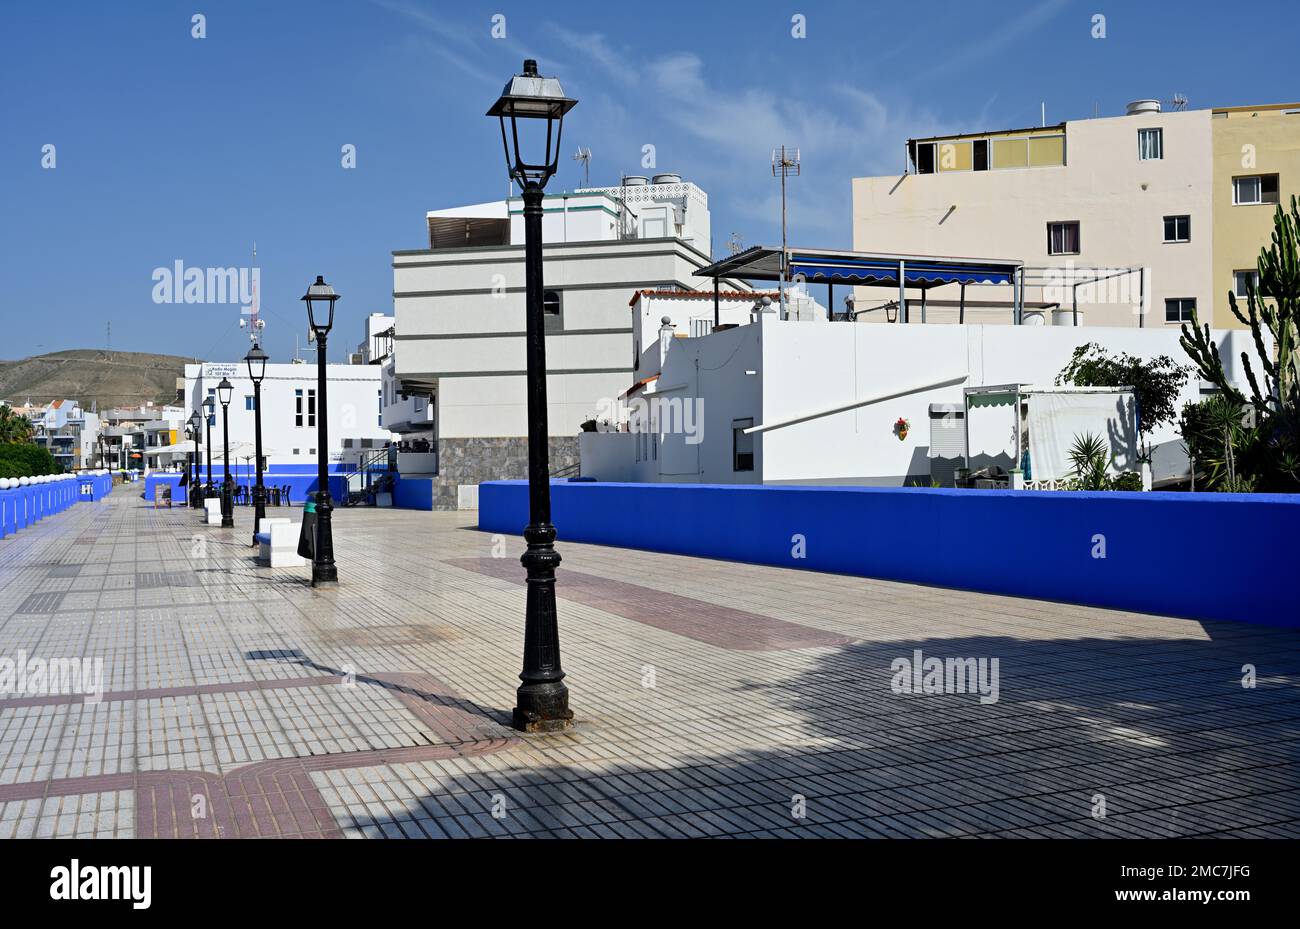 Seaside promenade, Plaza de los Tunidos,  “along Av. del Muelle” village of  Arguineguín, Las Palmas, Gran Canaria, Spain Stock Photo